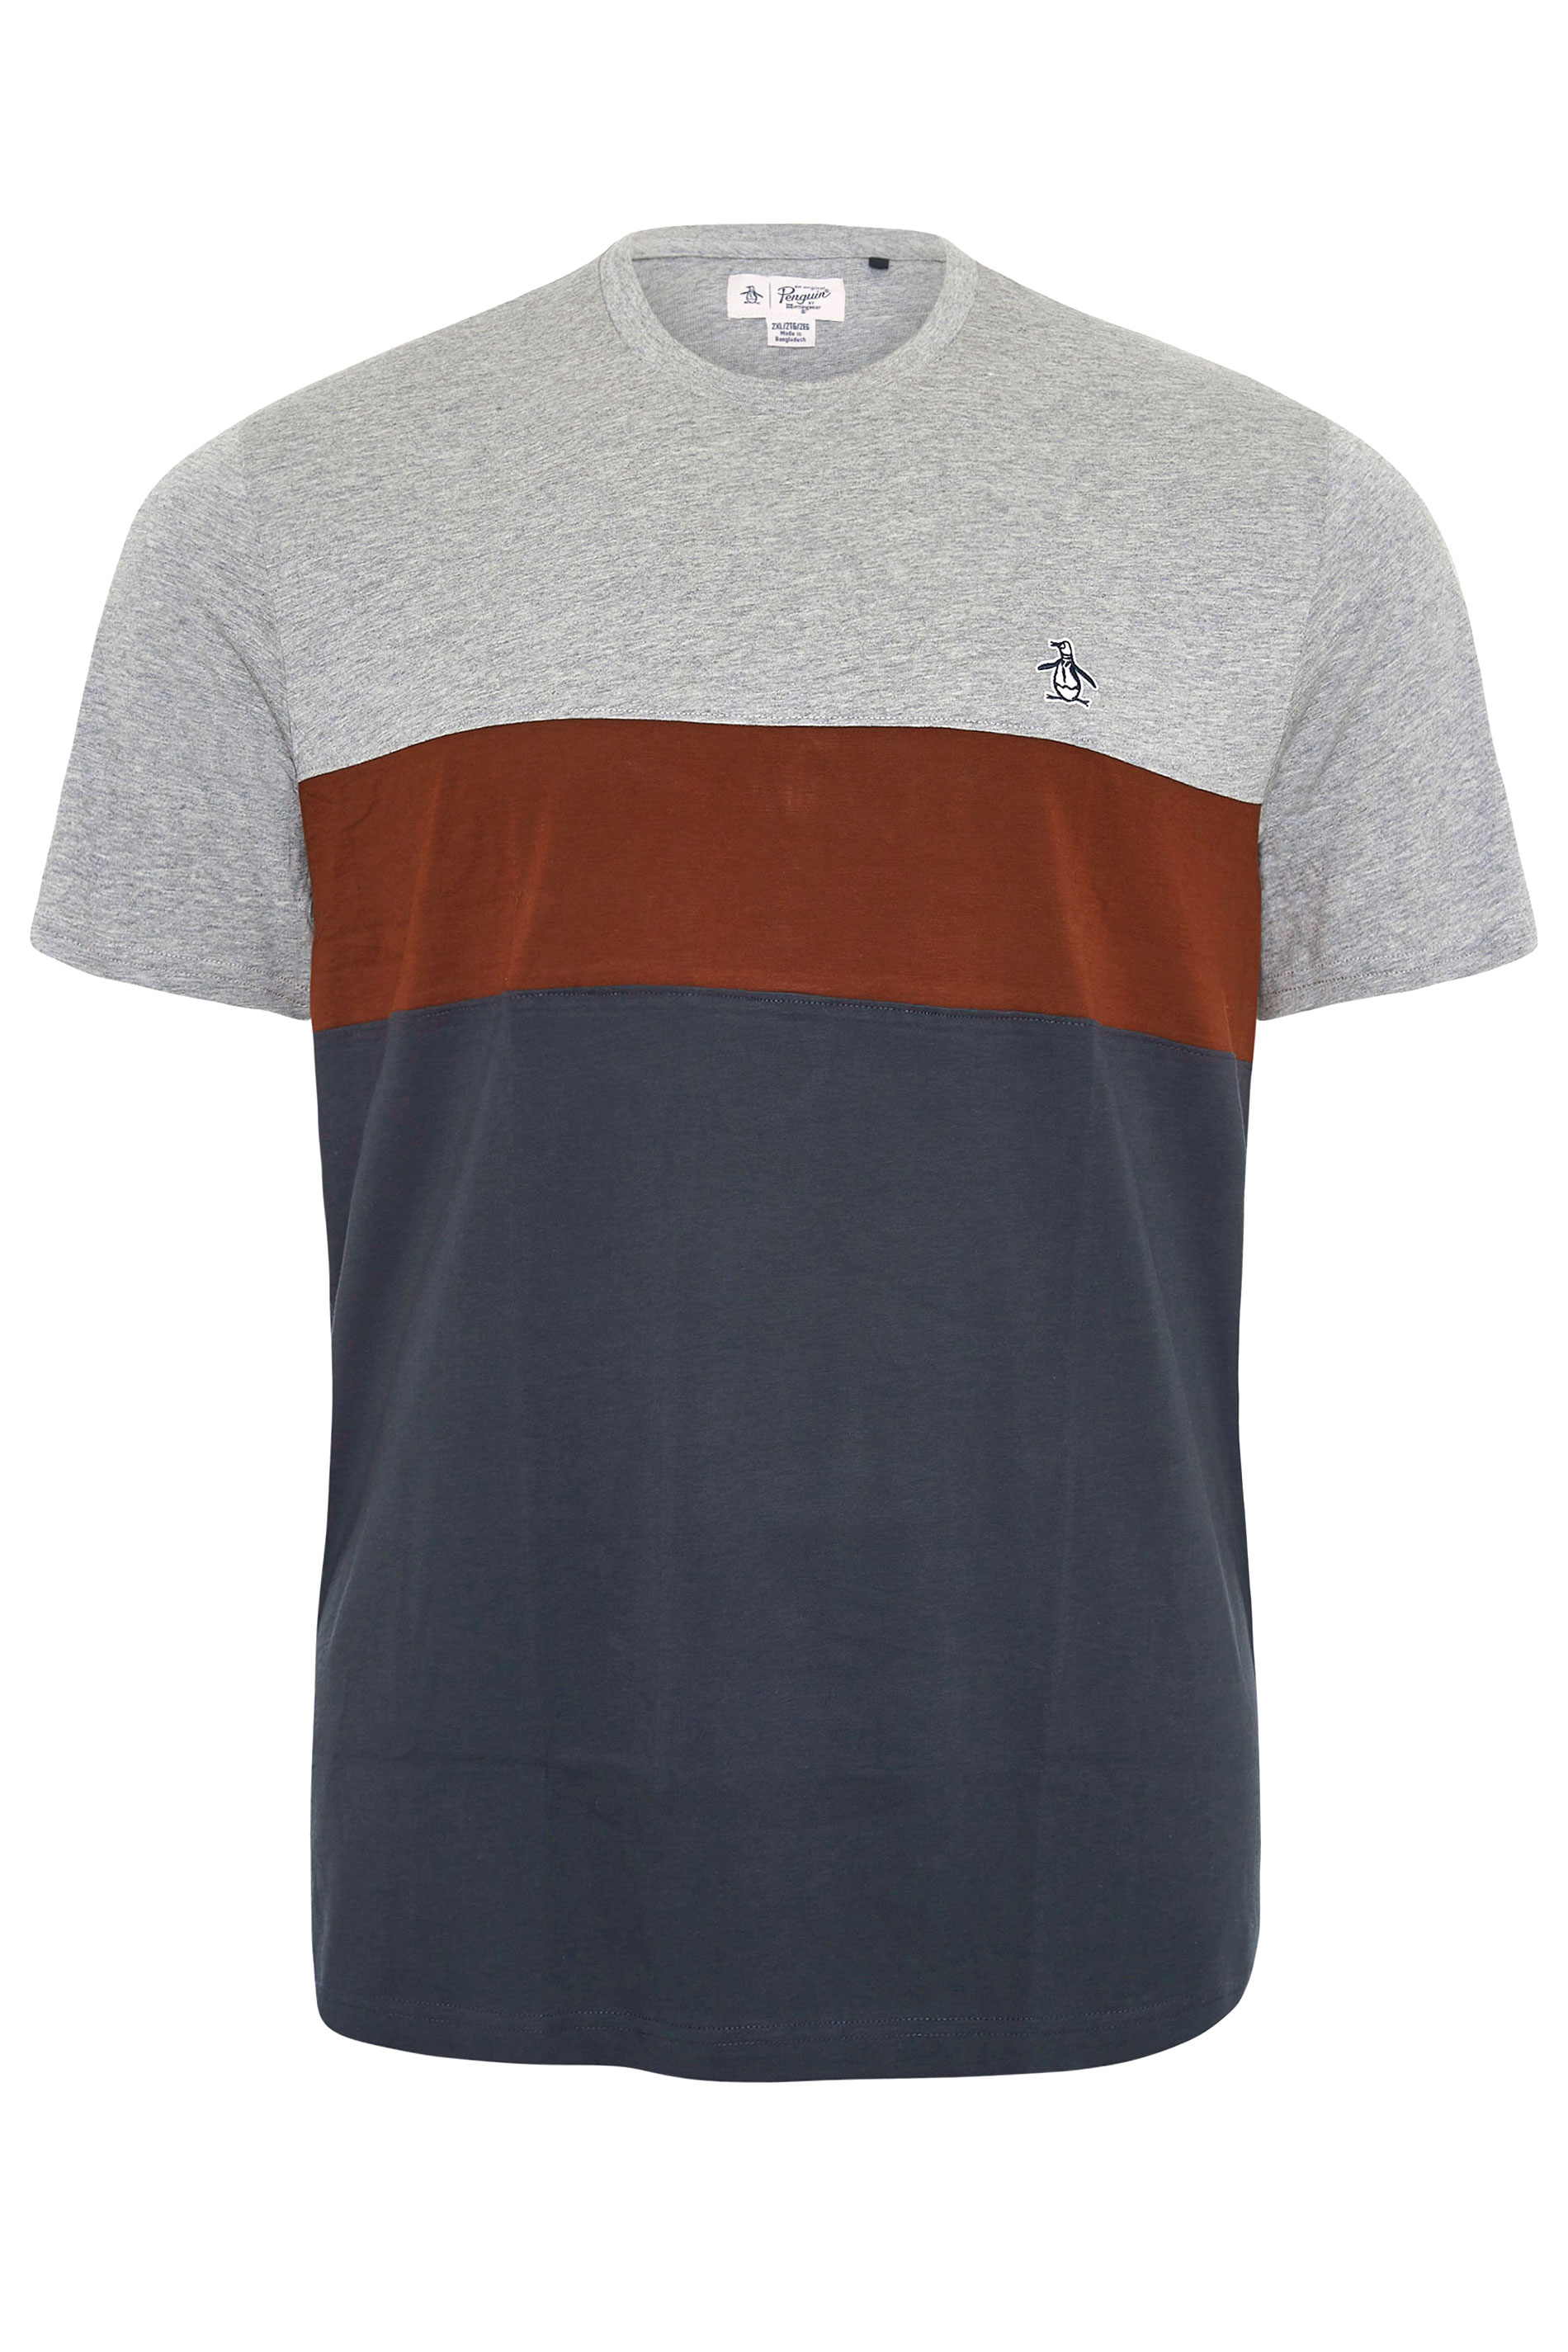 PENGUIN MUNSINGWEAR Big & Tall Grey Cut & Sew T-Shirt 1